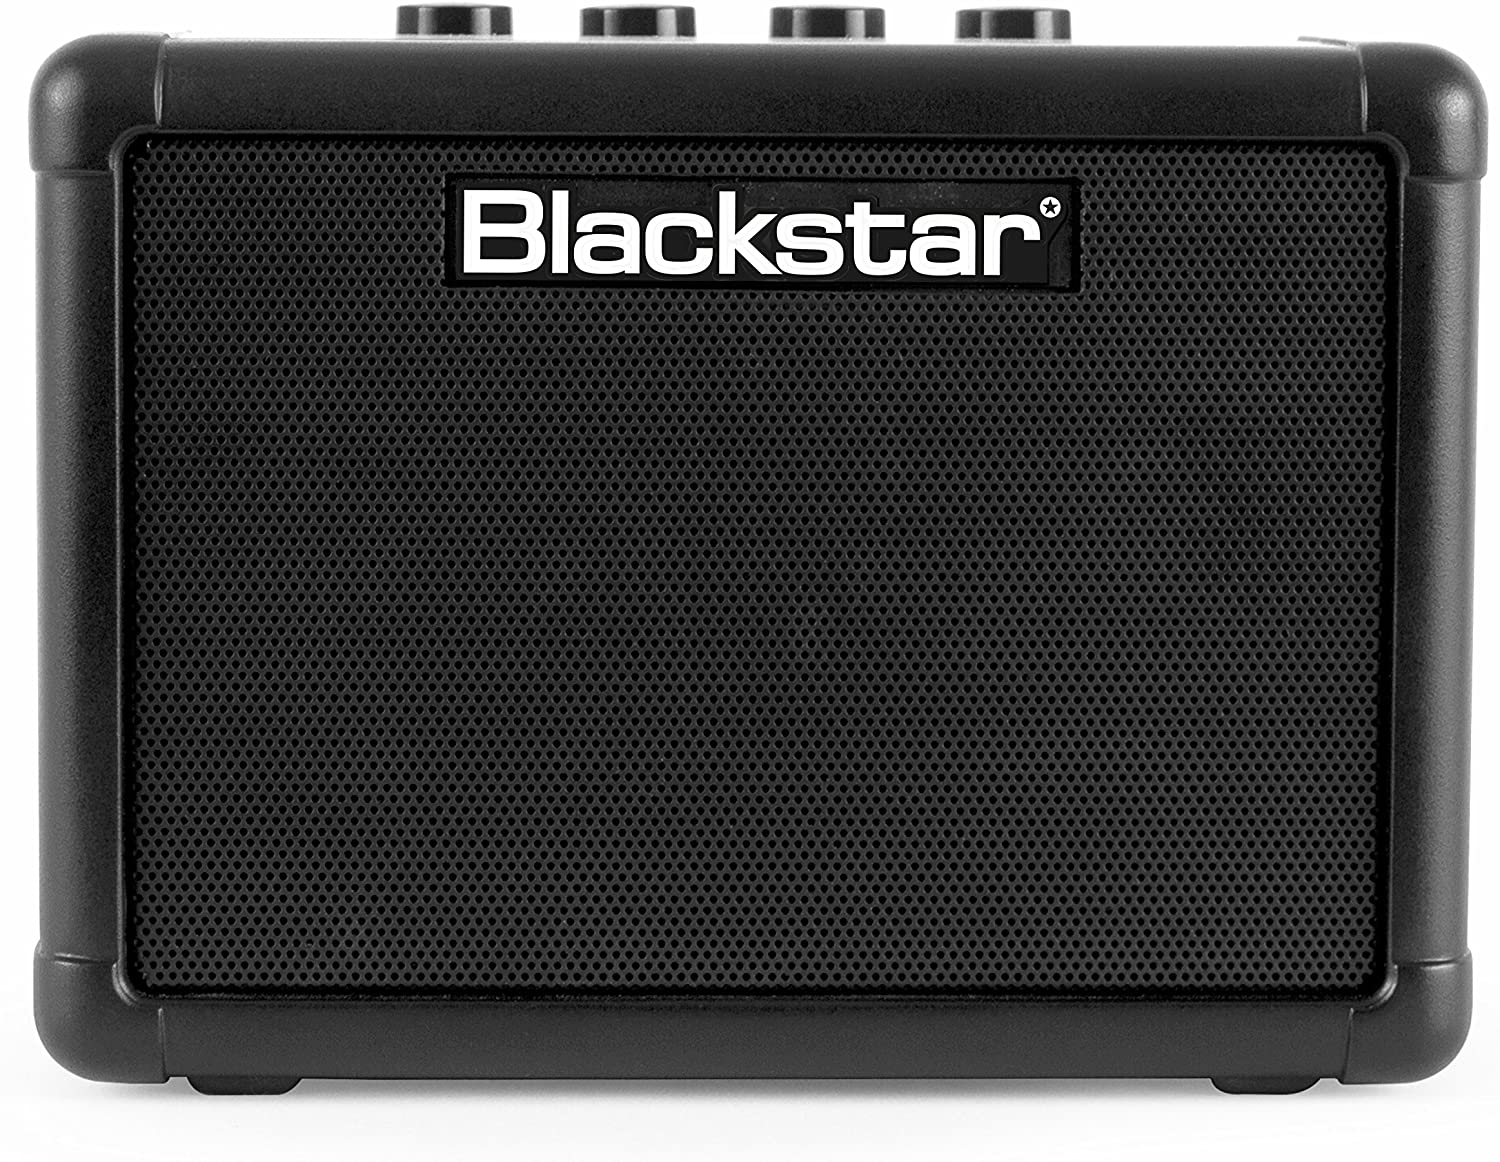 【大放出セール】 公式 Blackstar ブラックスター コンパクト ギターアンプ FLY3 Bluetooth appoie.com appoie.com